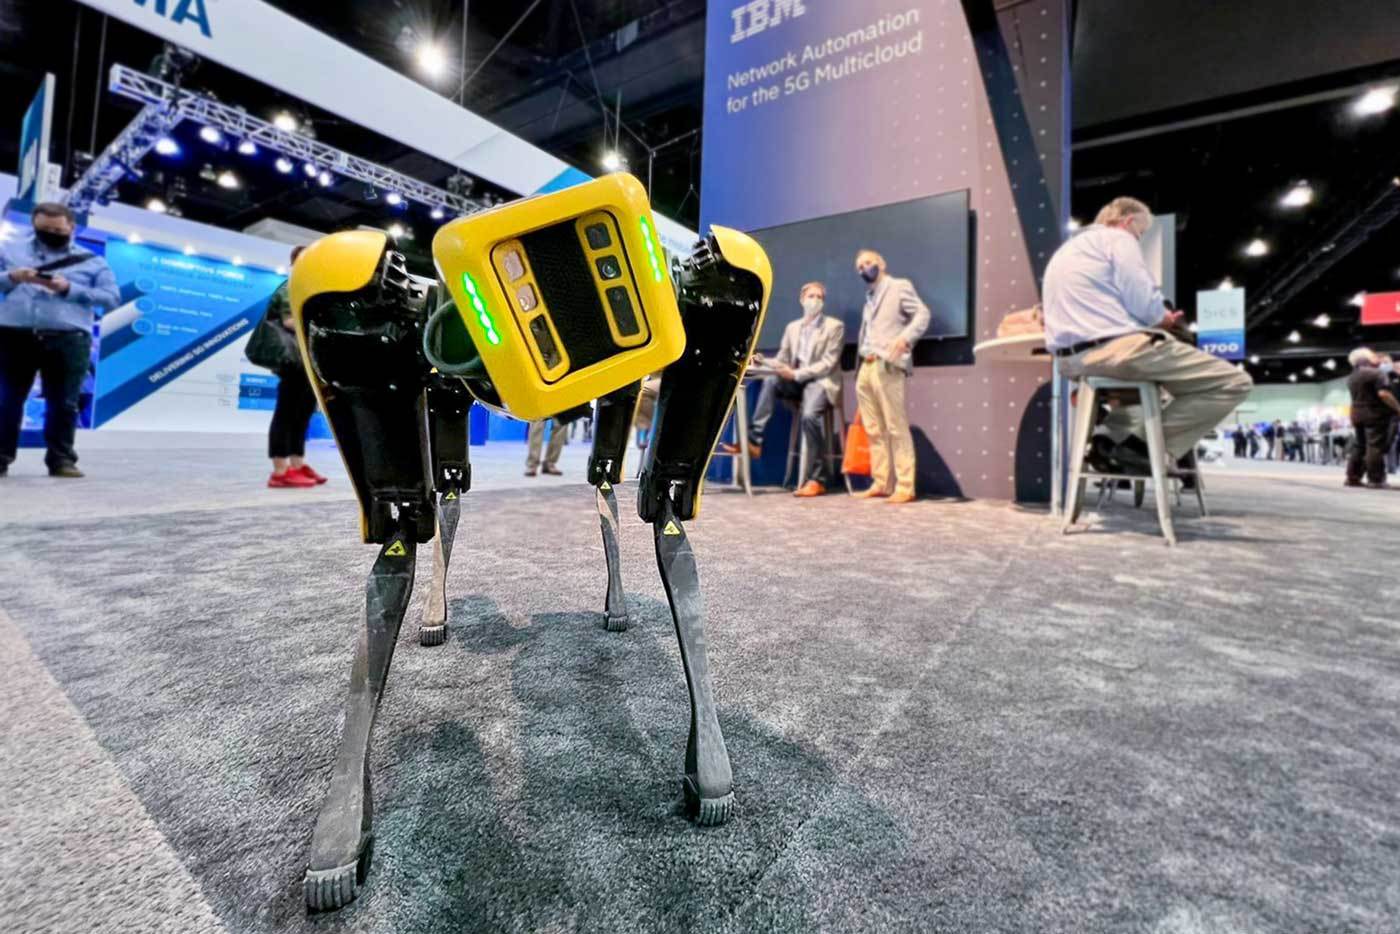 mwc boston dynamics robot dog